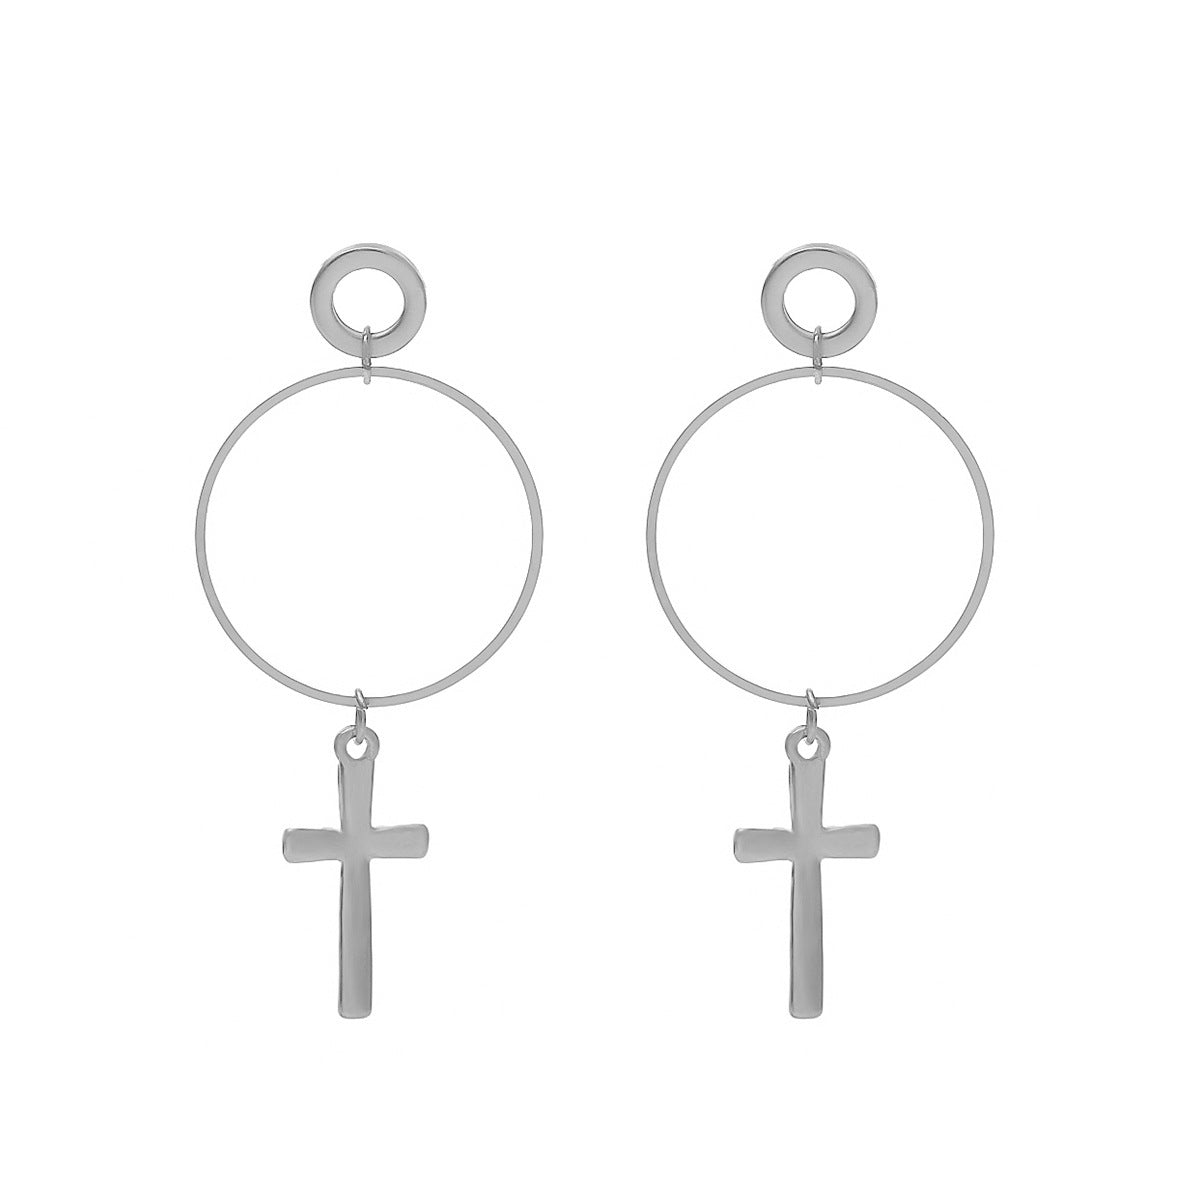 Classic Cross Pendant Earrings | Cross Pendant Earrings | Women's Stylish Earrings